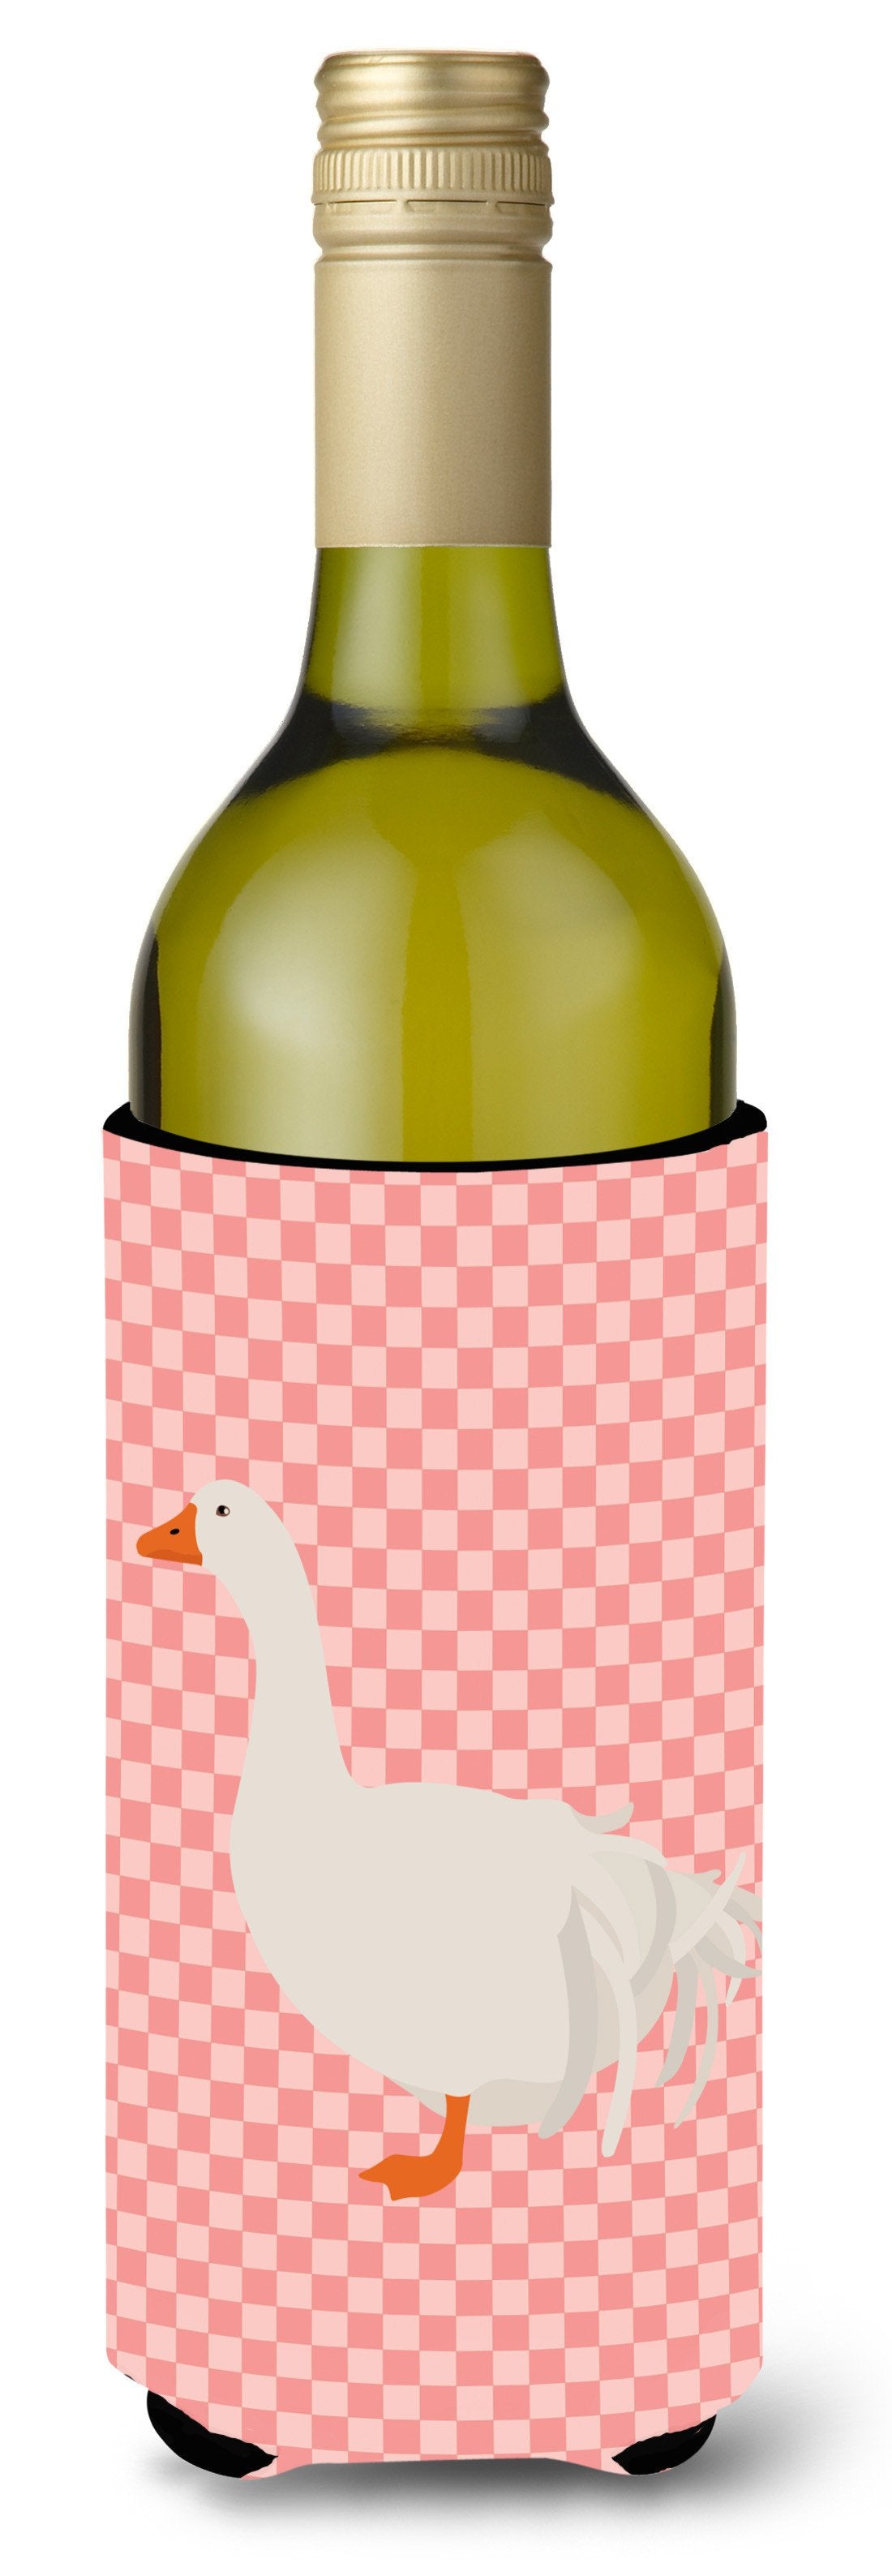 Sebastopol Goose Pink Check Wine Bottle Beverge Insulator Hugger BB7902LITERK by Caroline's Treasures